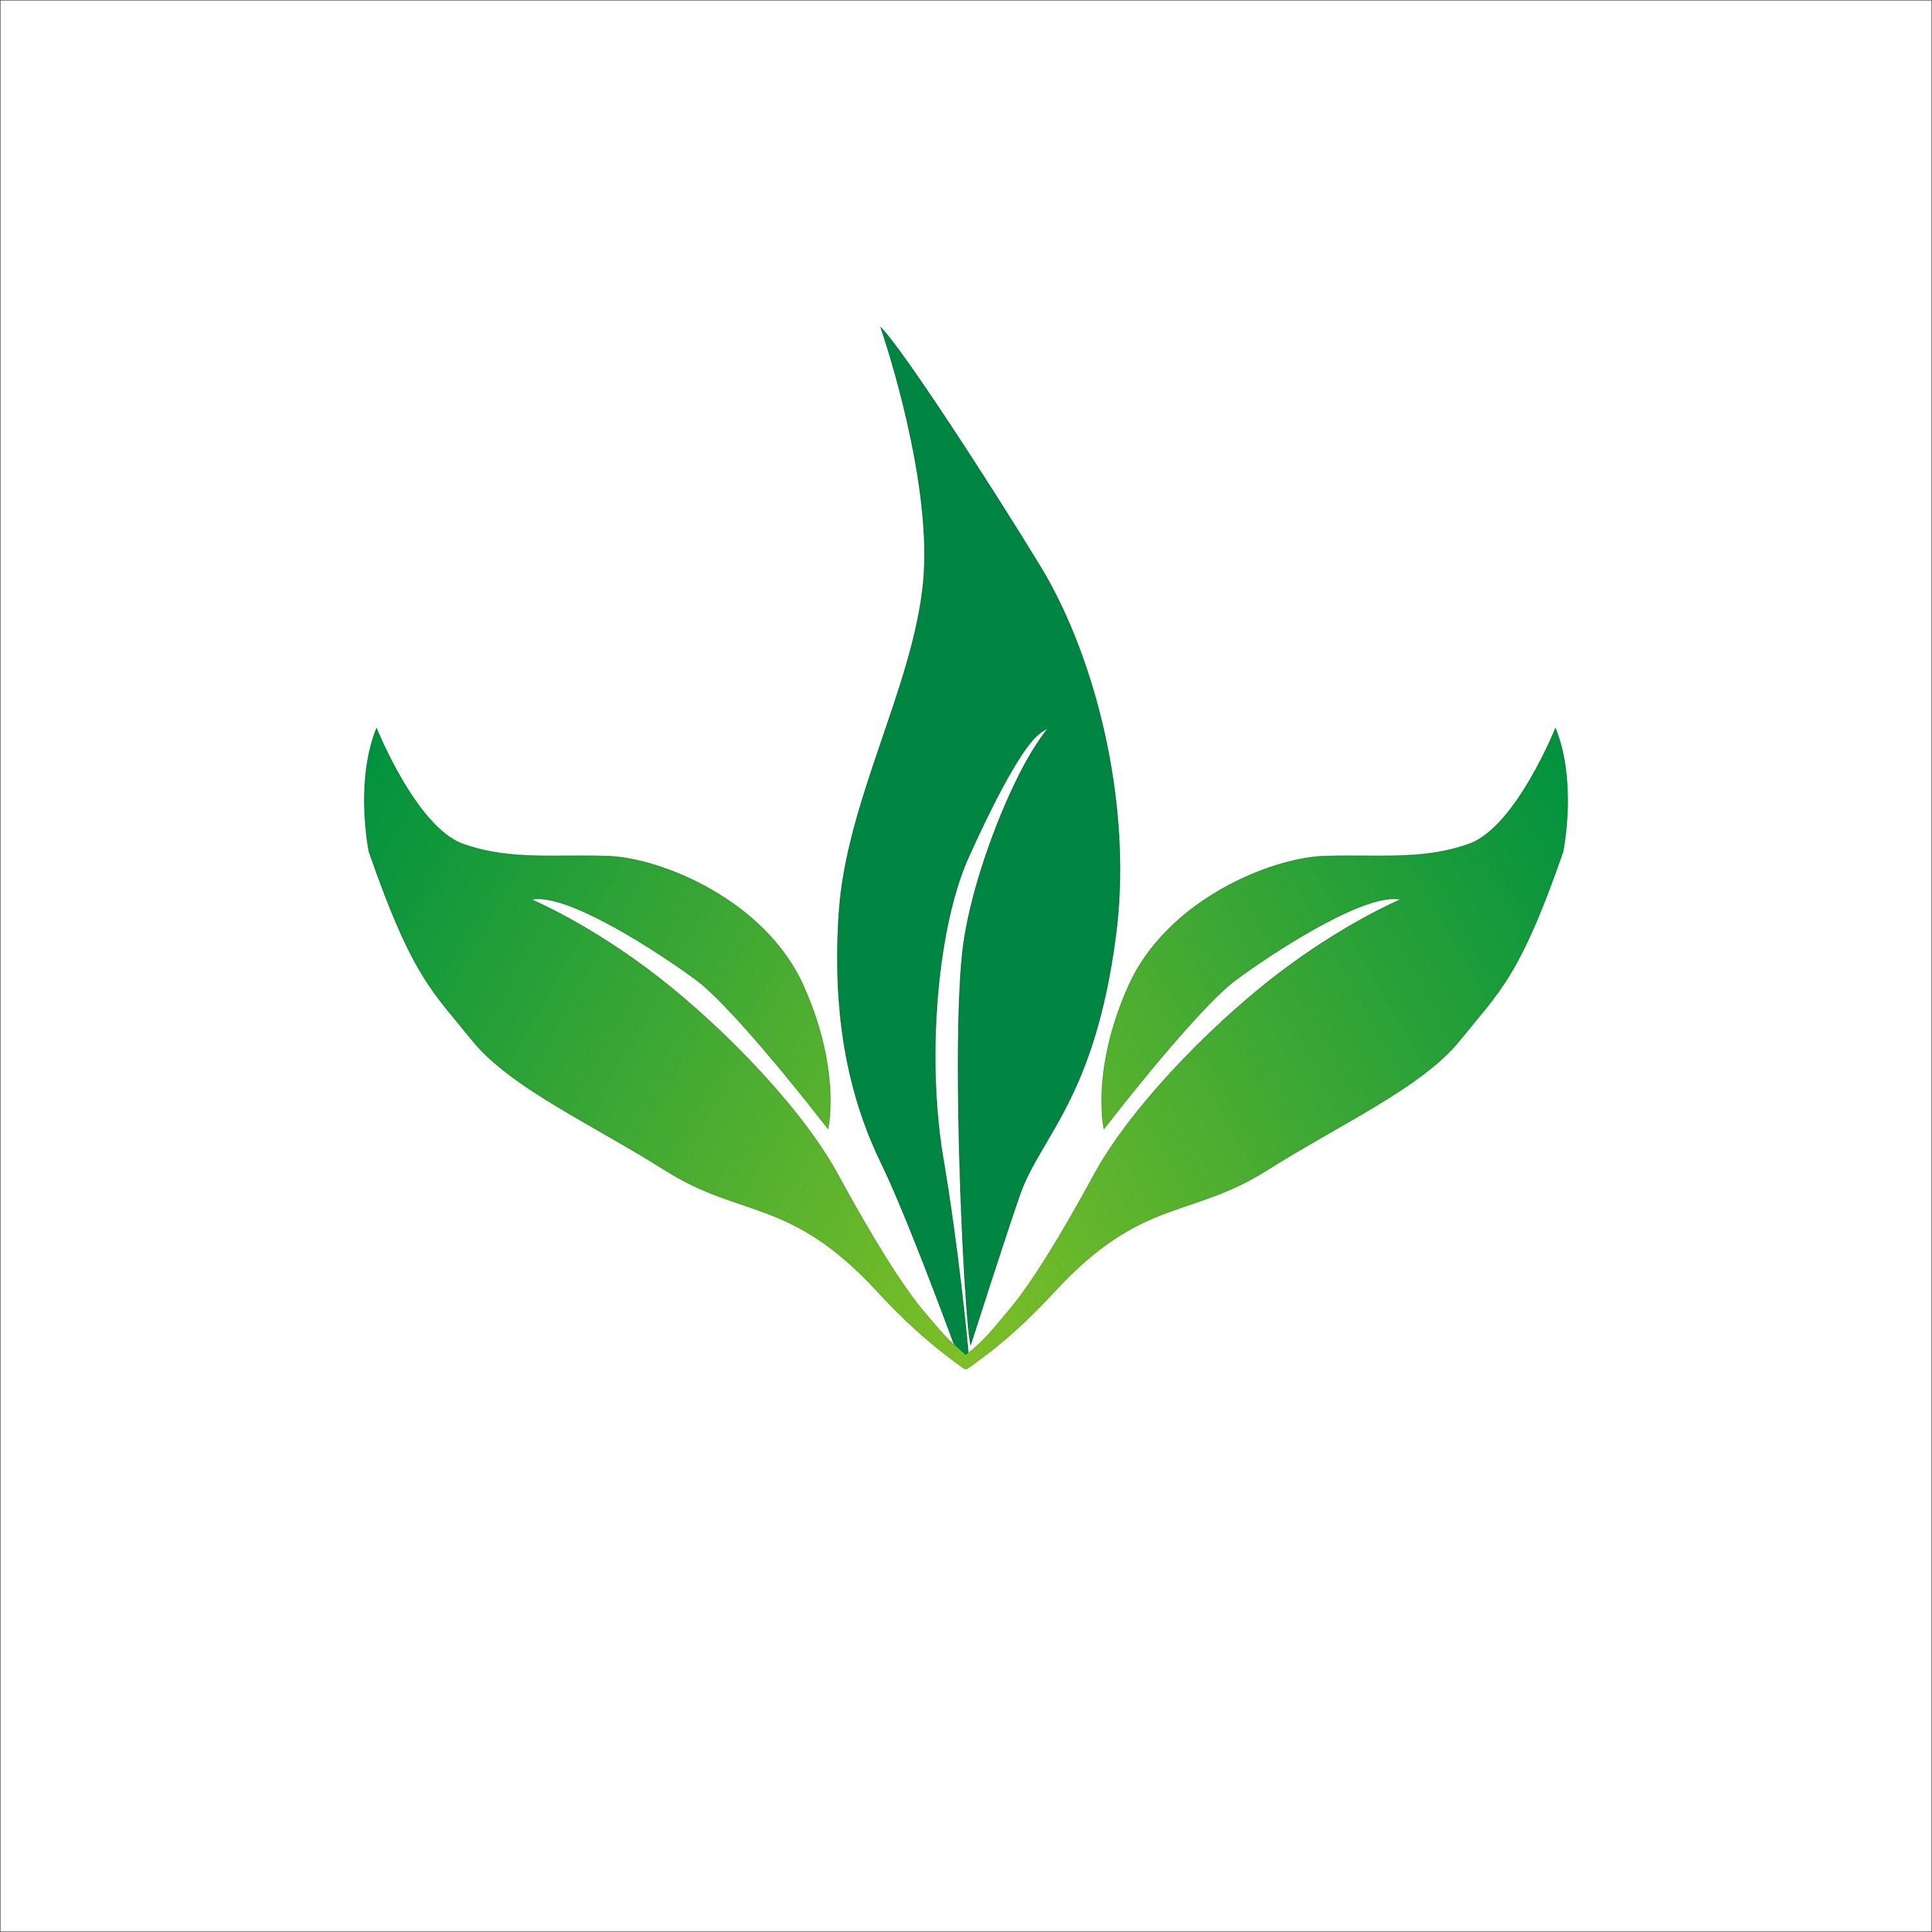 绿色公益环保标志设计图片素材免费下载 - 觅知网